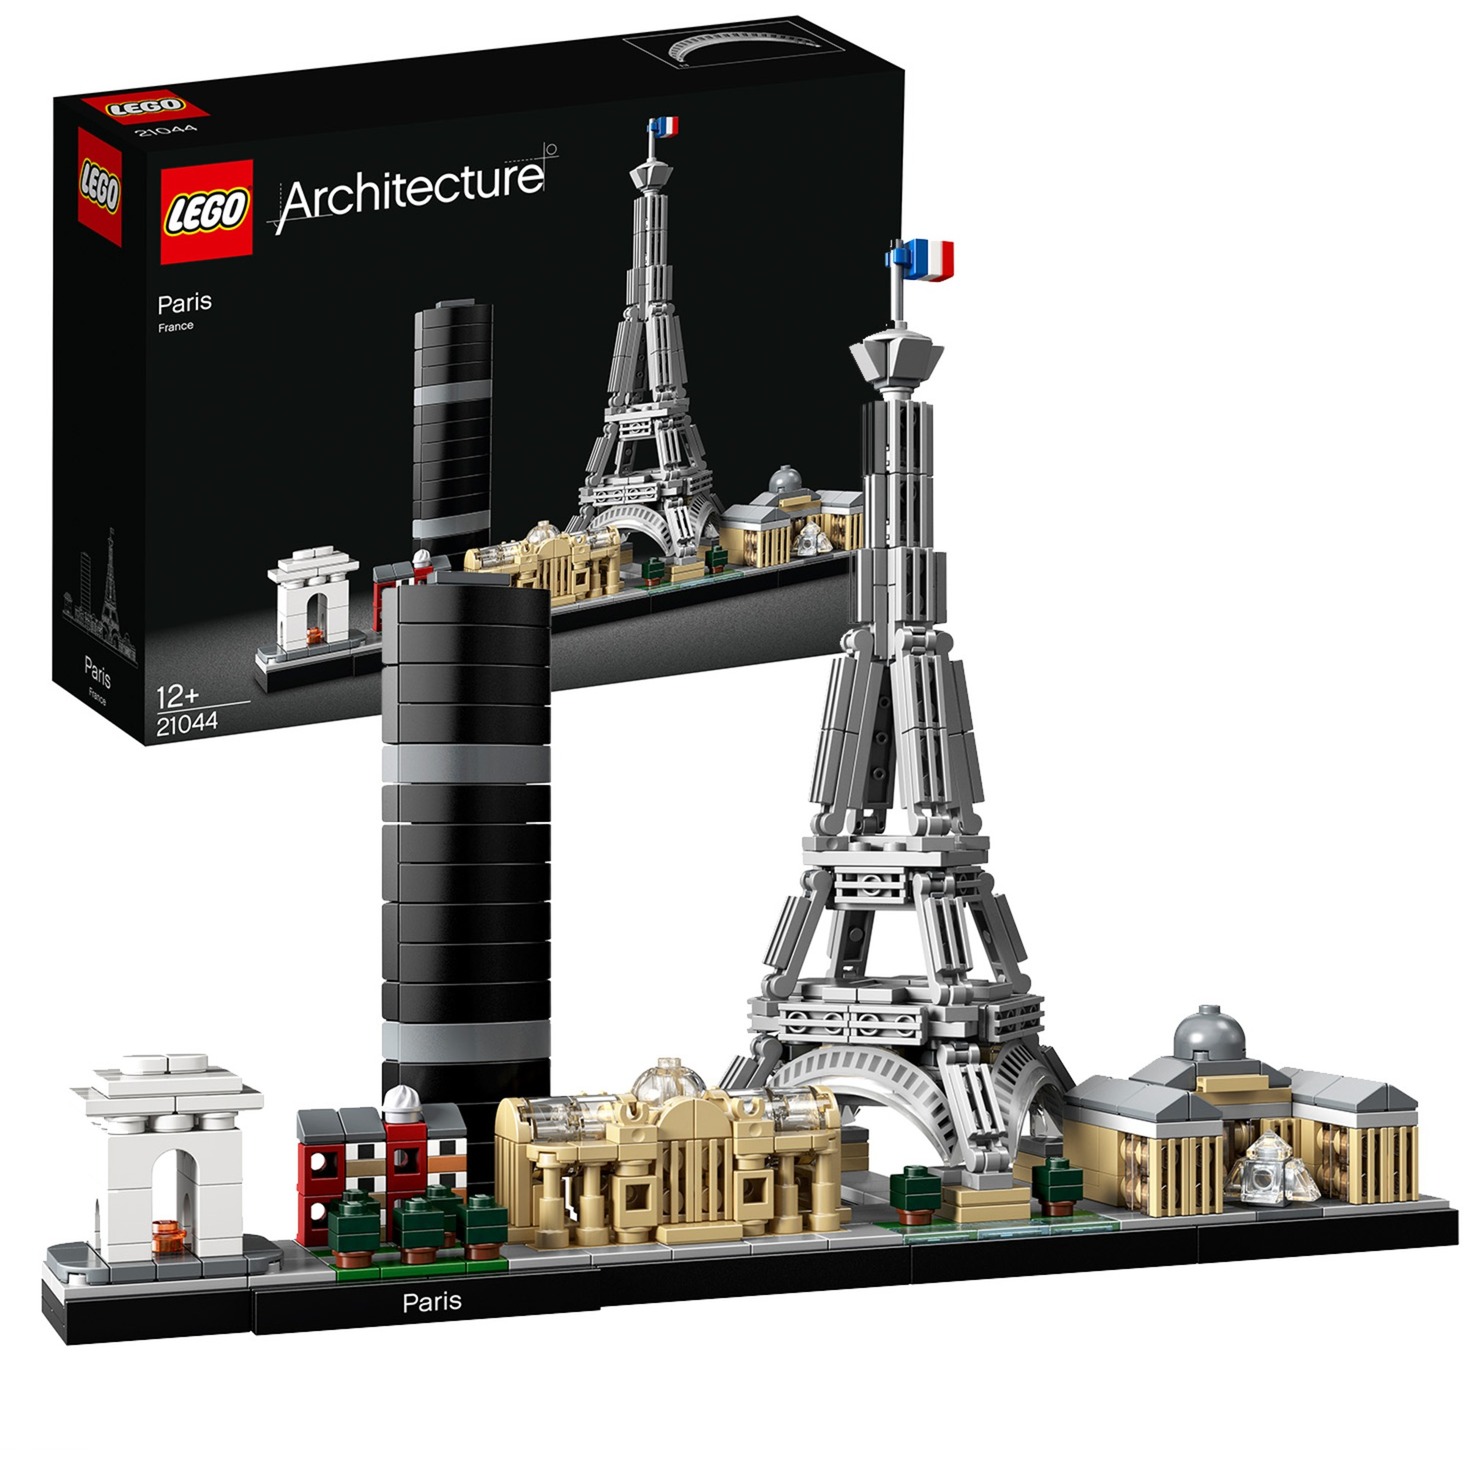 Image of Alternate - 21044 Architecture Paris, Konstruktionsspielzeug online einkaufen bei Alternate